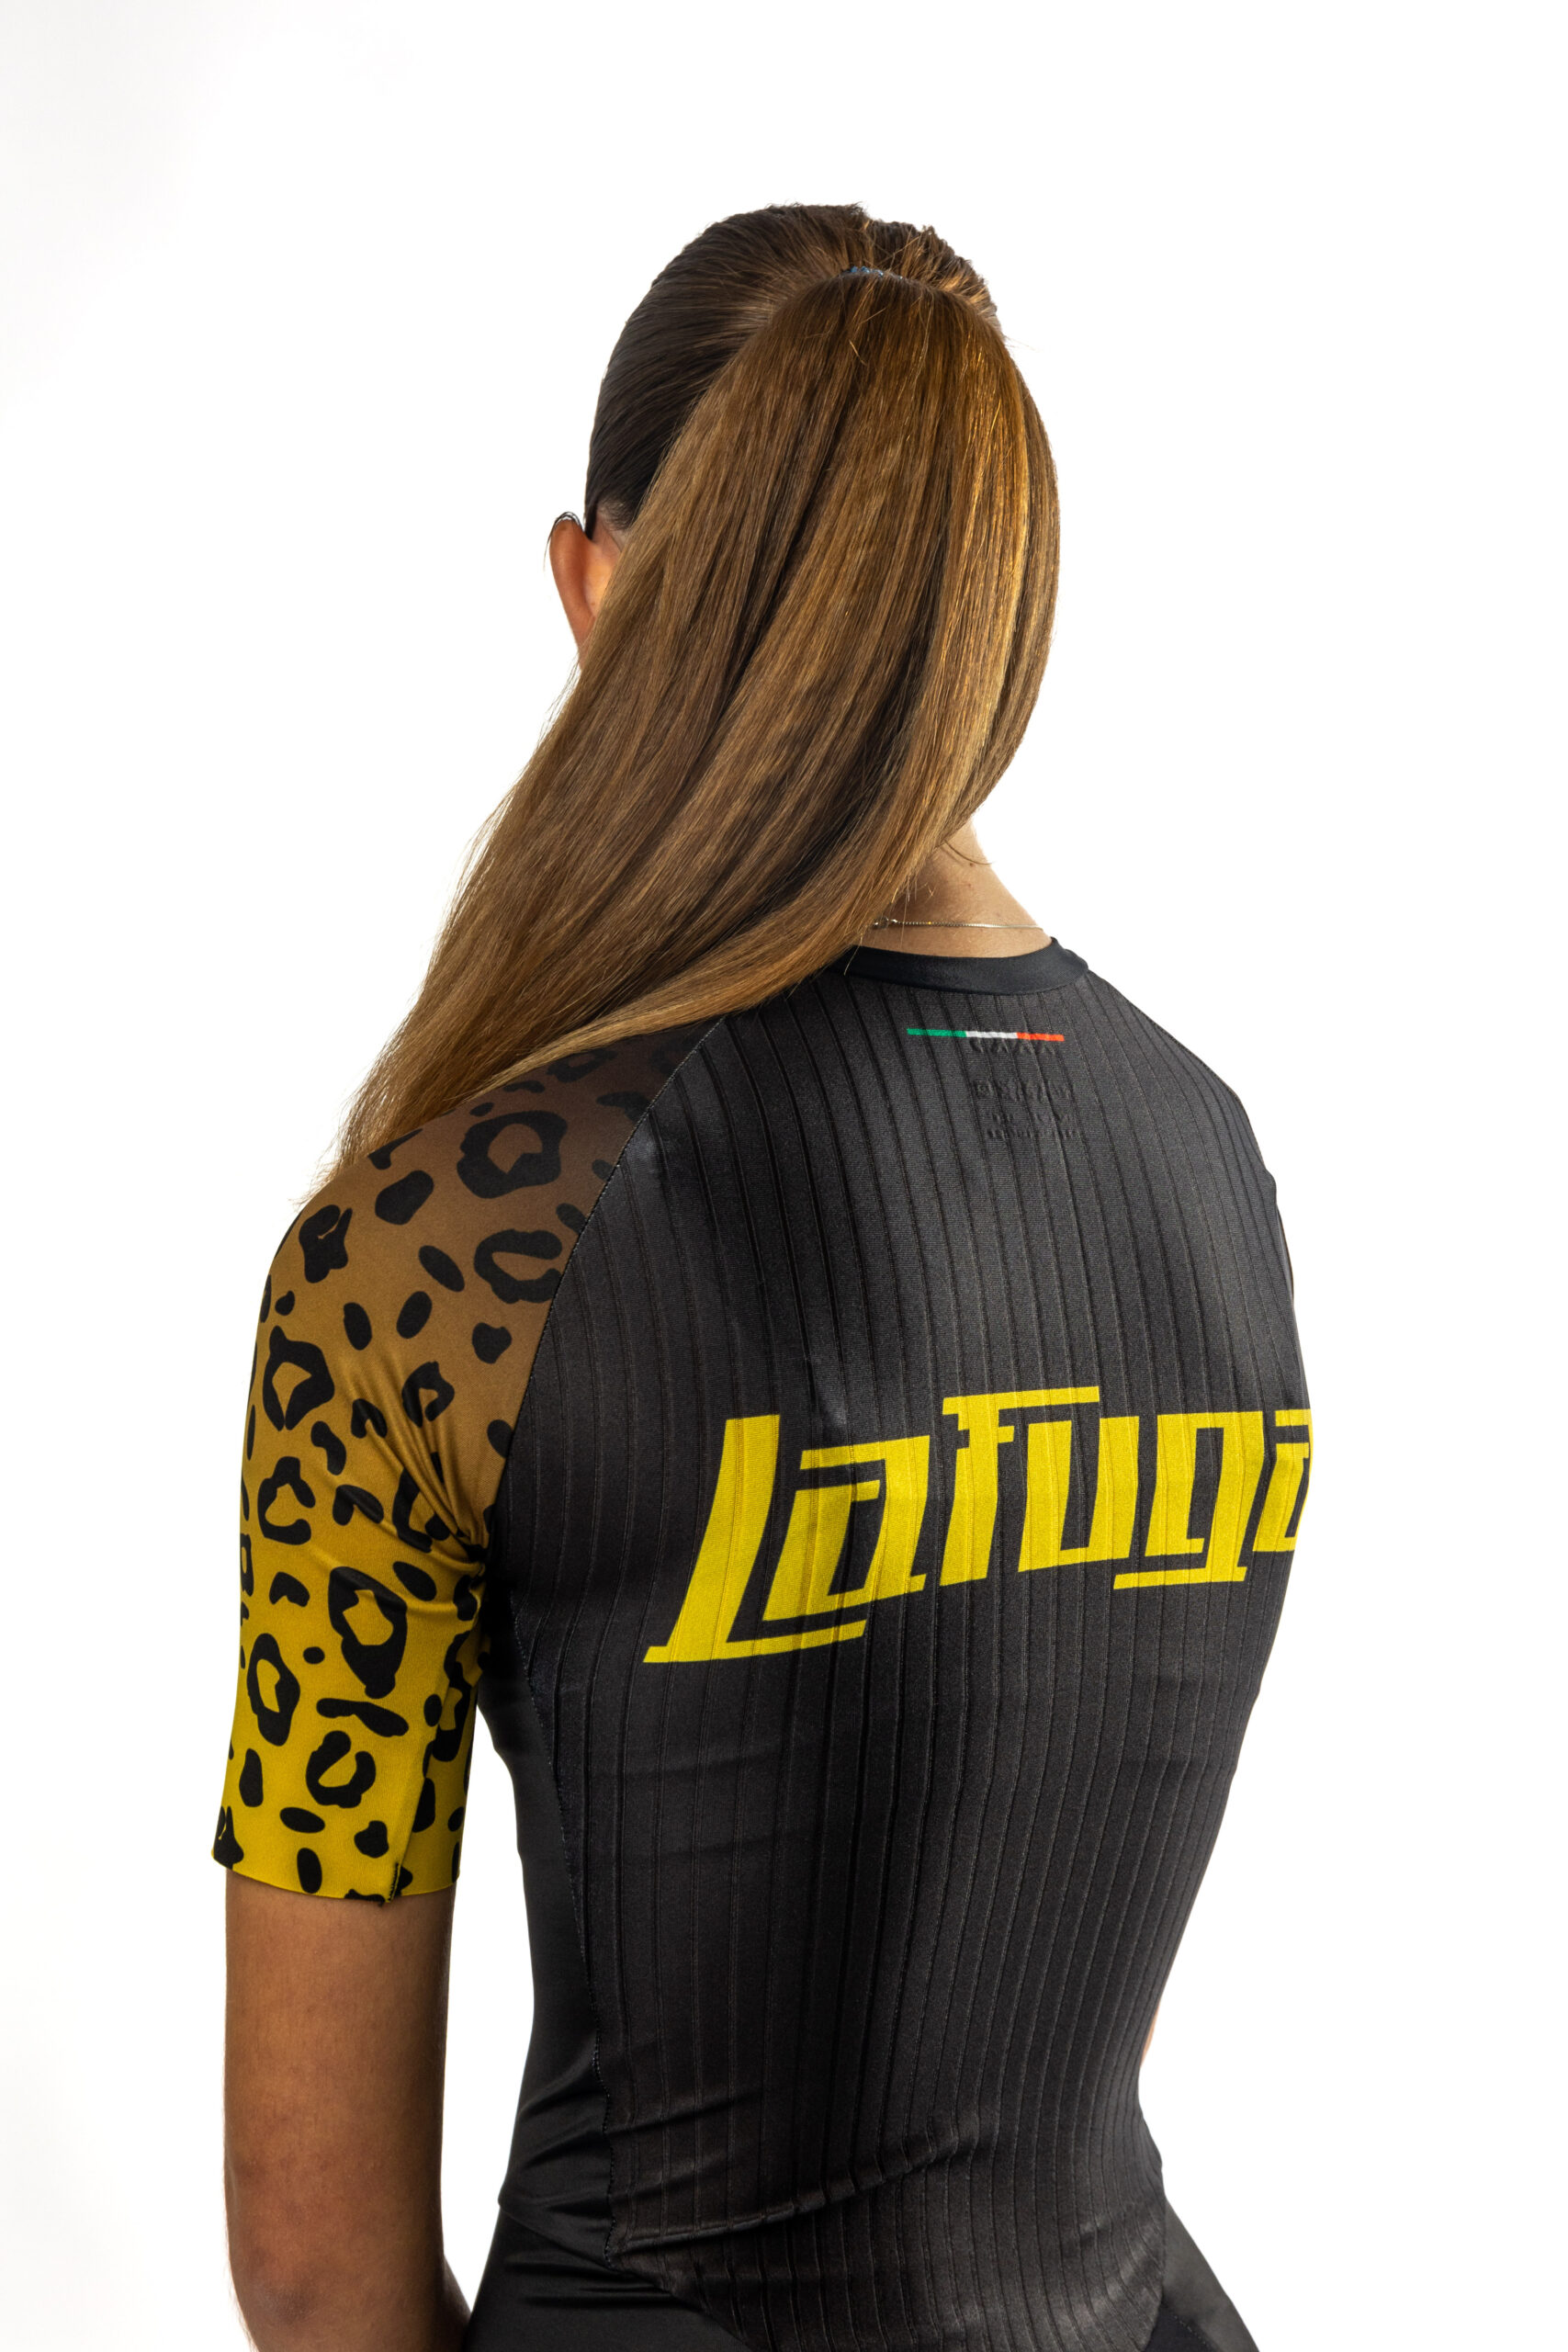 LaFuga fietskleding gymwear gym trainingspak sweater t-shirt bergasports cycling gear wear jersey bib short longsleeve shortsleeve jasje jacket